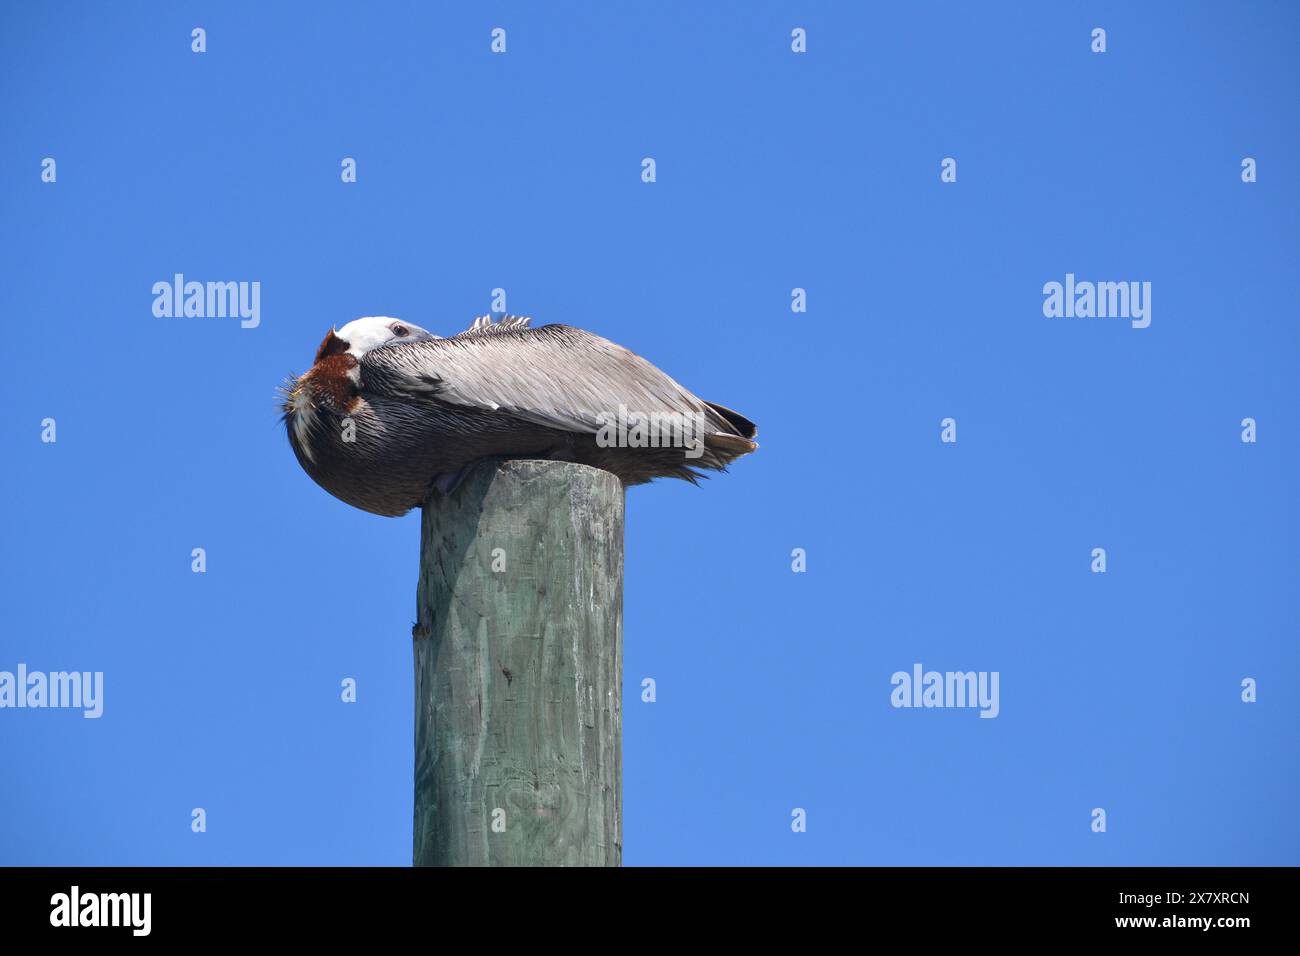 Ein brauner Pelikan, dessen Kopf eingedeckt ist, ragt auf einem Holzpfahl vor dem Hintergrund eines auffallend klaren blauen Himmels und beobachtet den Fotografen aufmerksam Stockfoto